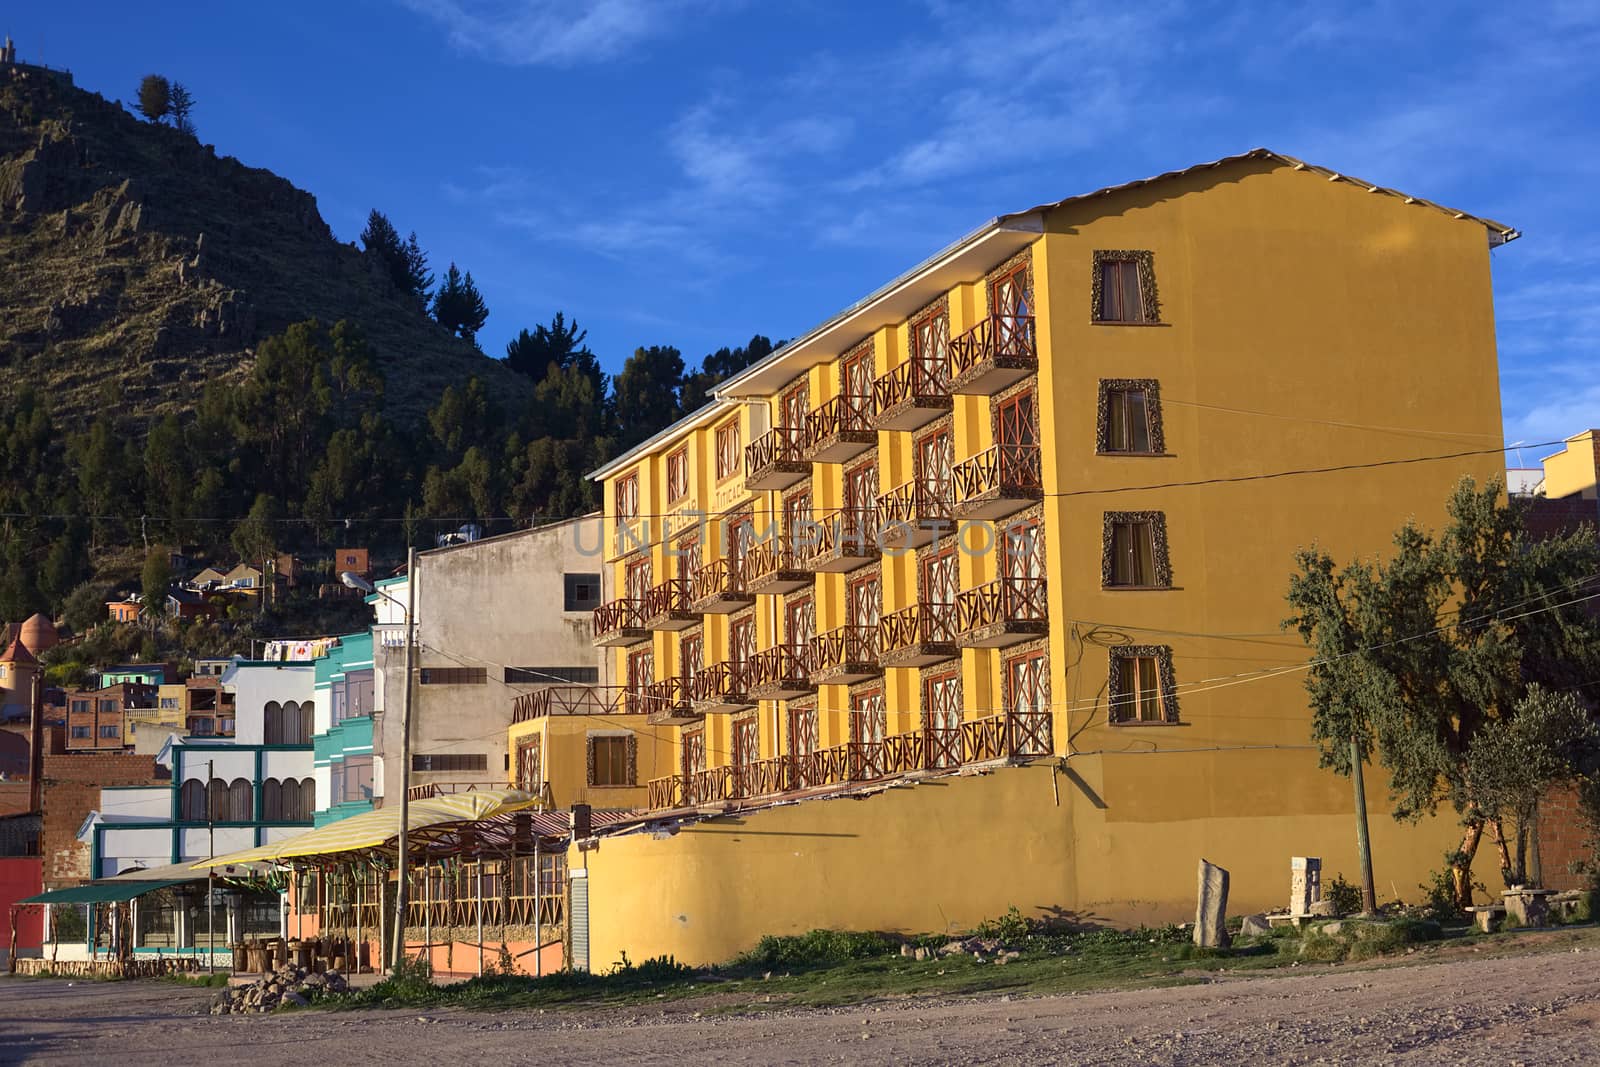 Hotel Estelar del Titicaca in Copacabana, Bolivia by ildi